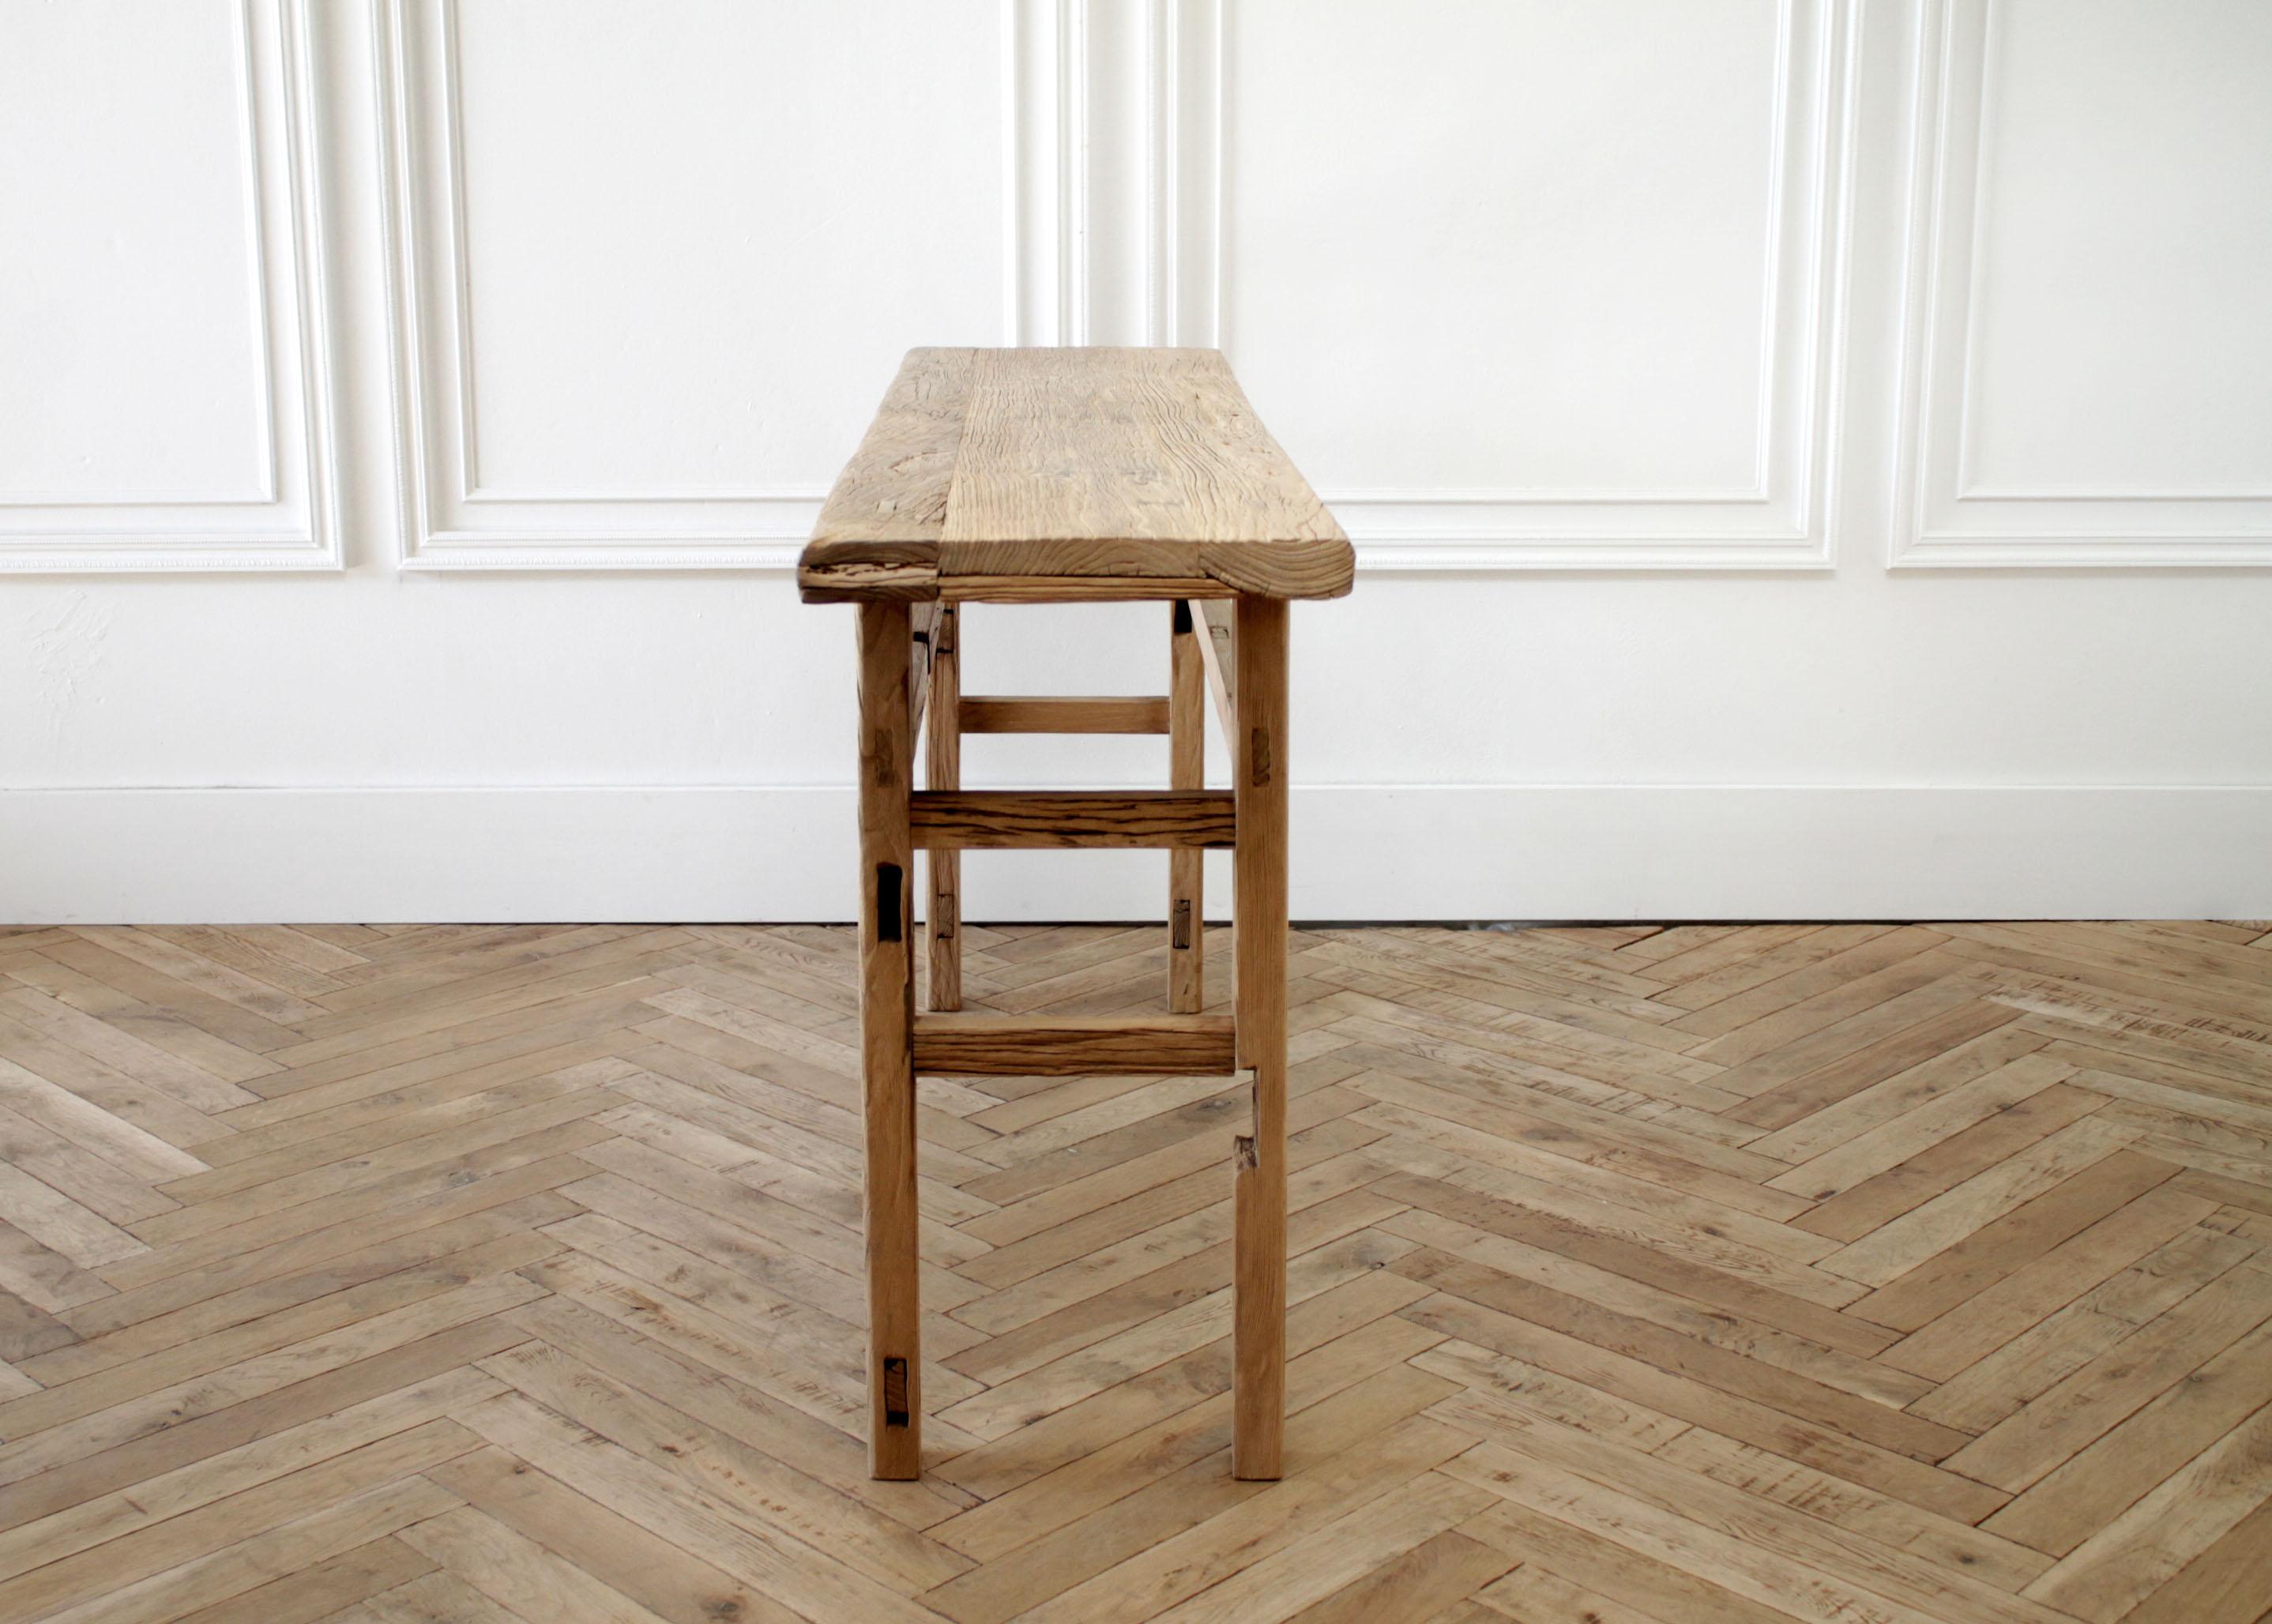 Vintage elm wood console table
Measures: 63